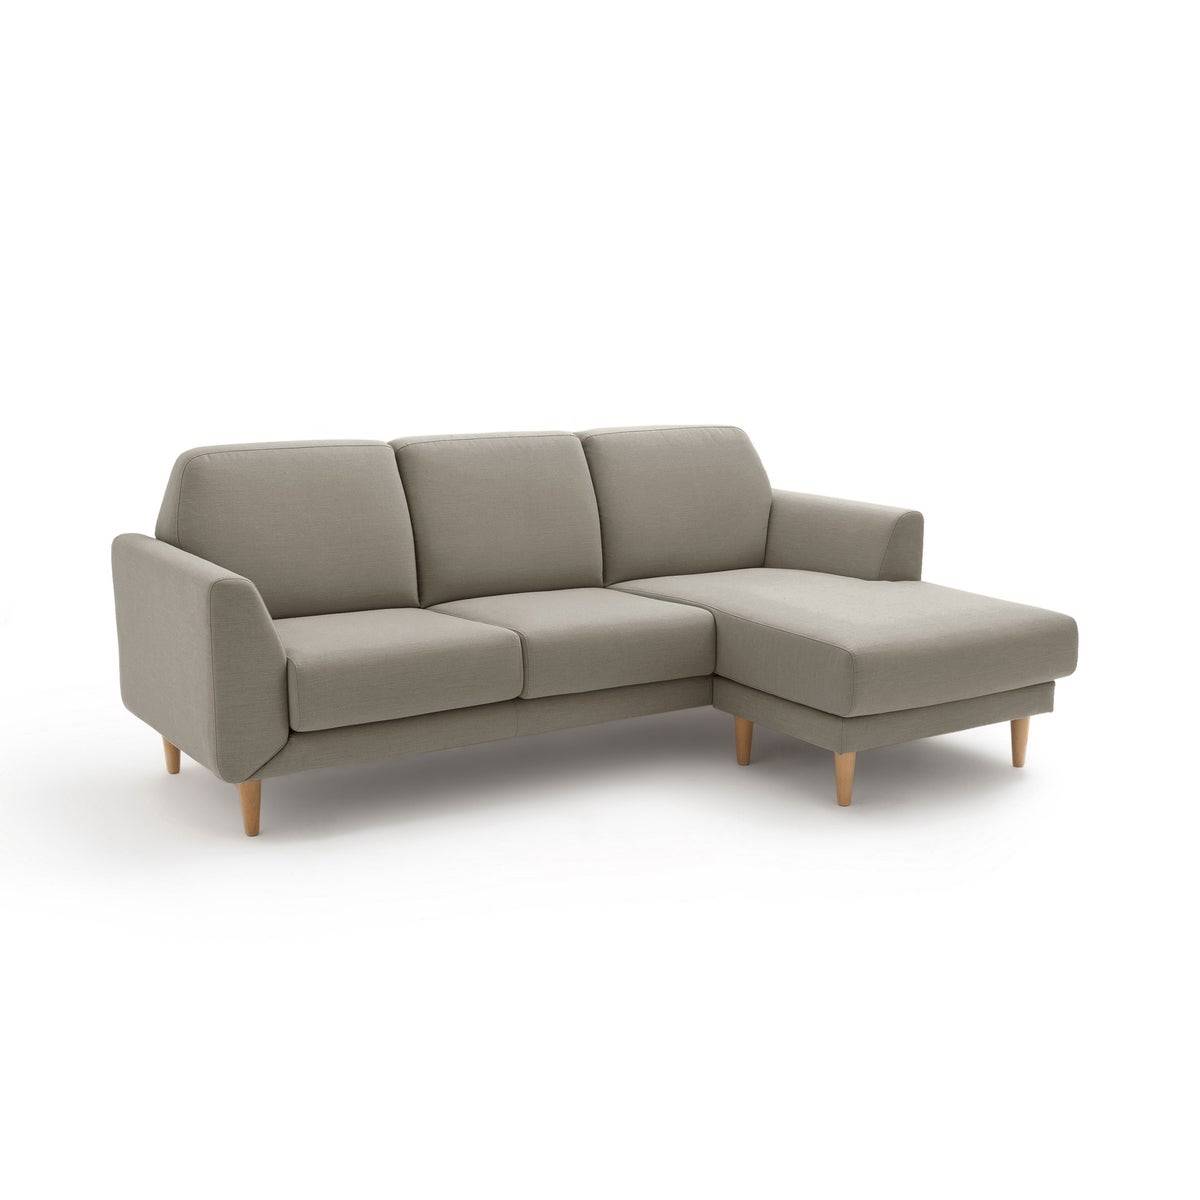 Sofá con chaise longue de color gris claro modelo Jasper de La Redoute